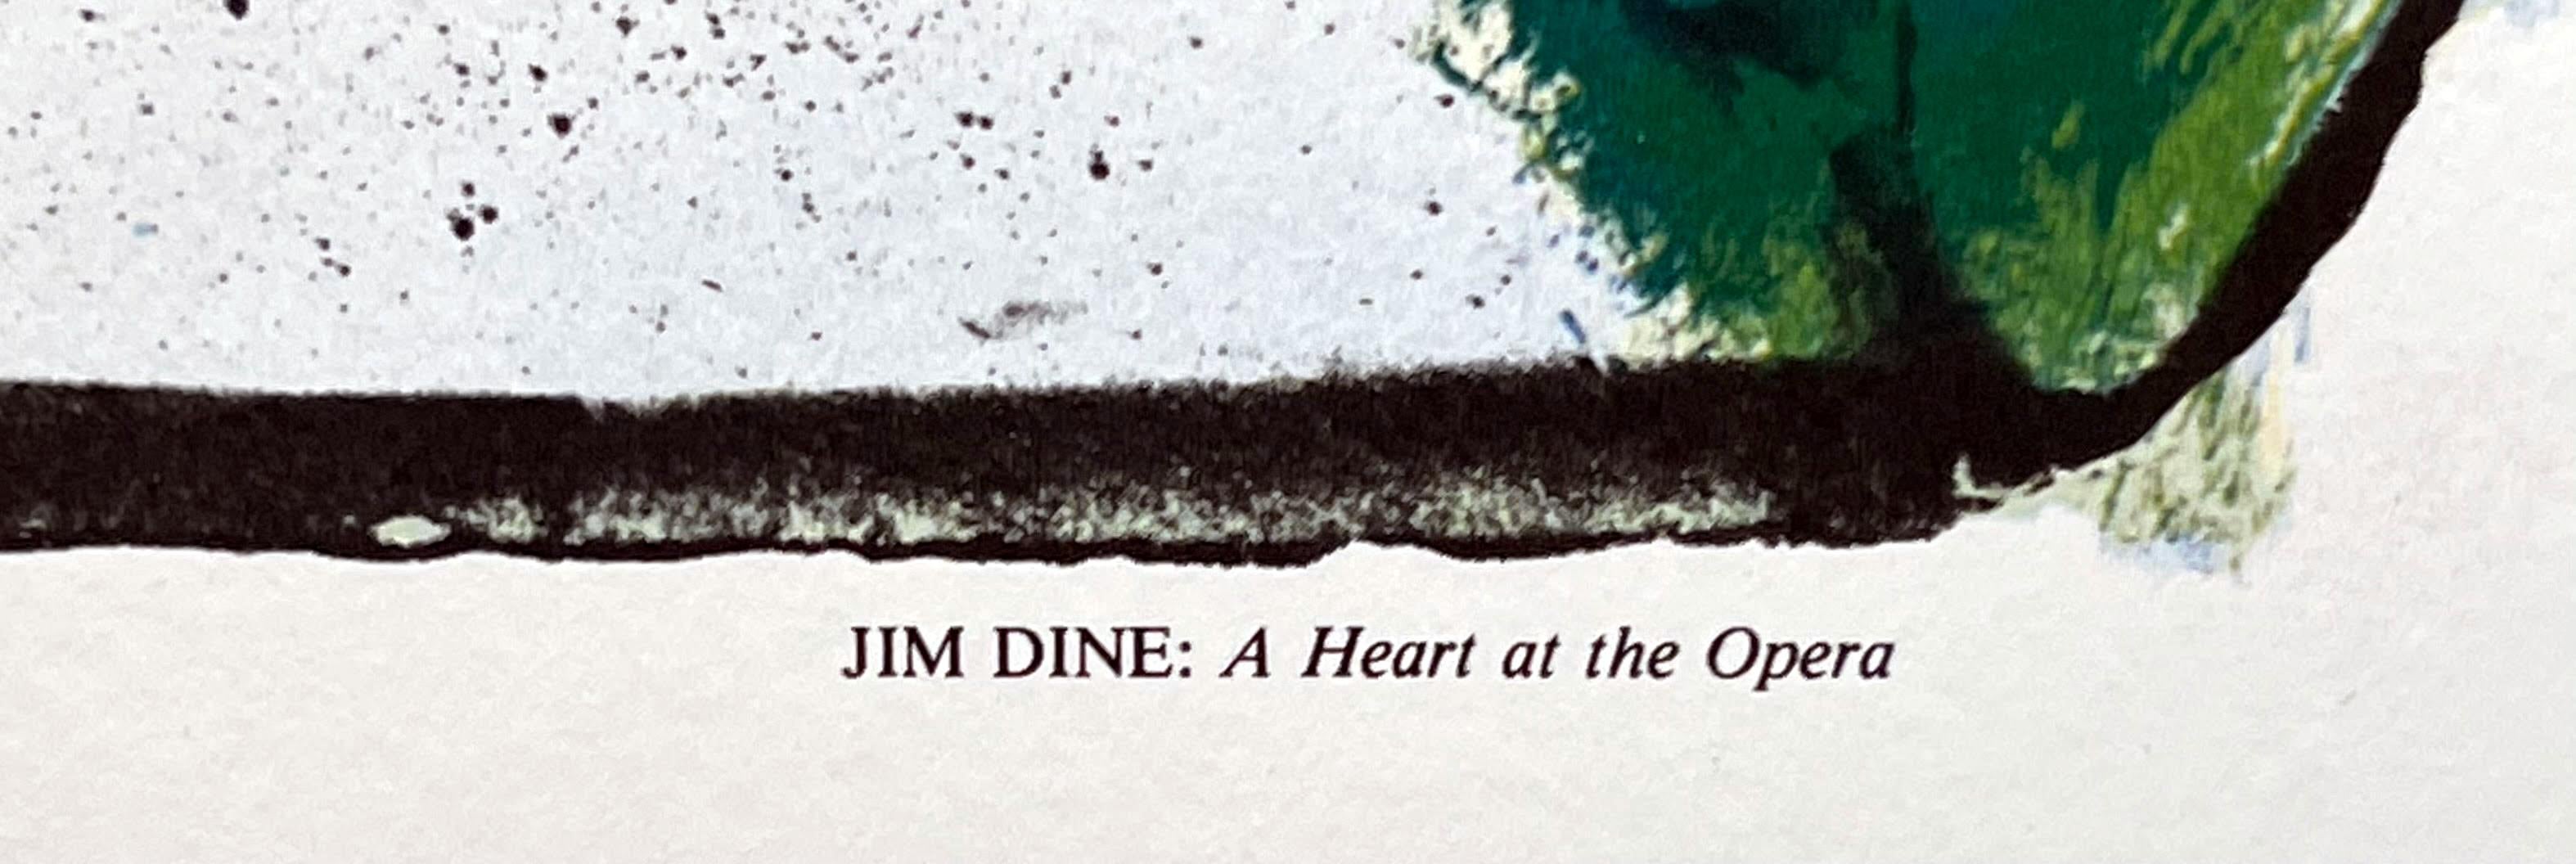 Jim Dine
Plakat zur Hundertjahrfeier der Metropolitan Opera 1883-1983, 1983
Offsetlithografie-Plakat; unsigniert
46 × 29 Zoll
Ungerahmt
Dieses Plakat in limitierter Auflage wurde anlässlich der Hundertjahrfeier der Metropolitan Opera 1883-1983